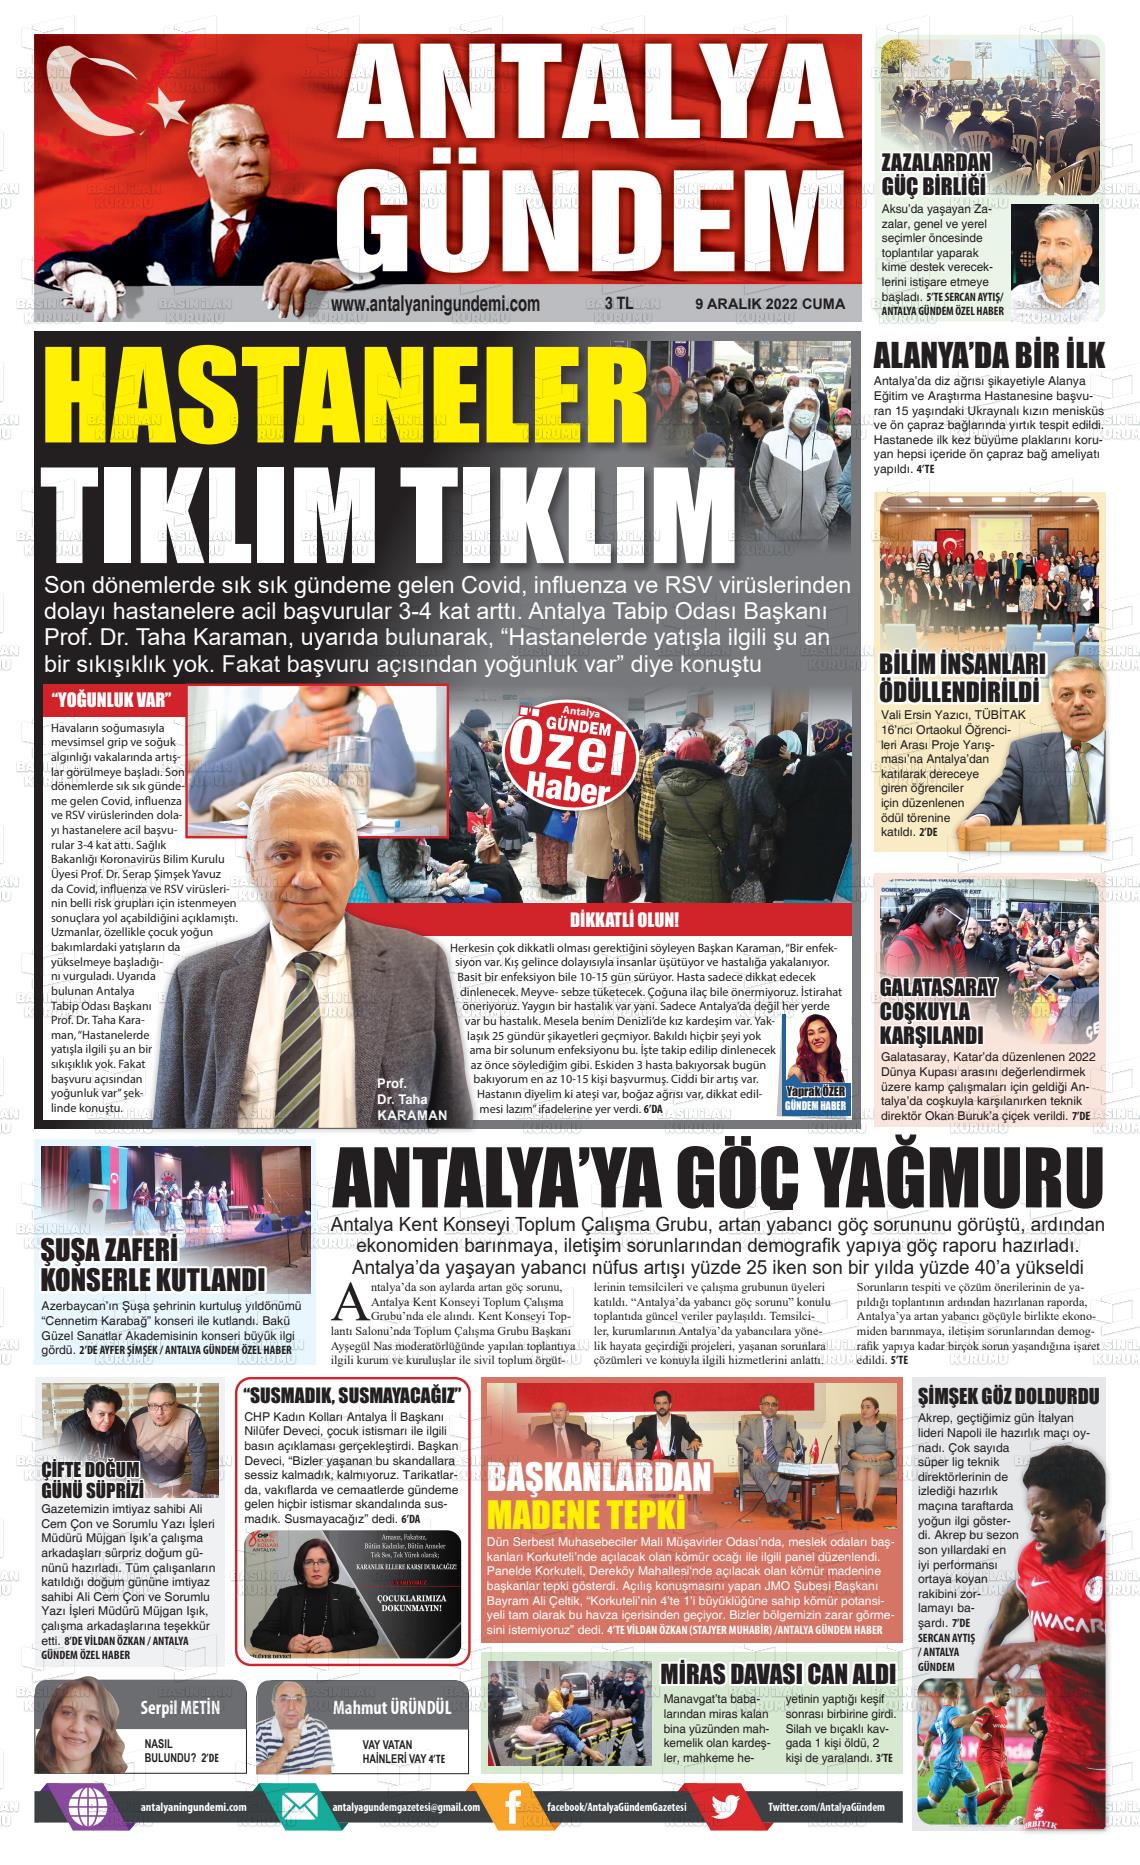 09 Aralık 2022 Antalya'nın Gündemi Gazete Manşeti